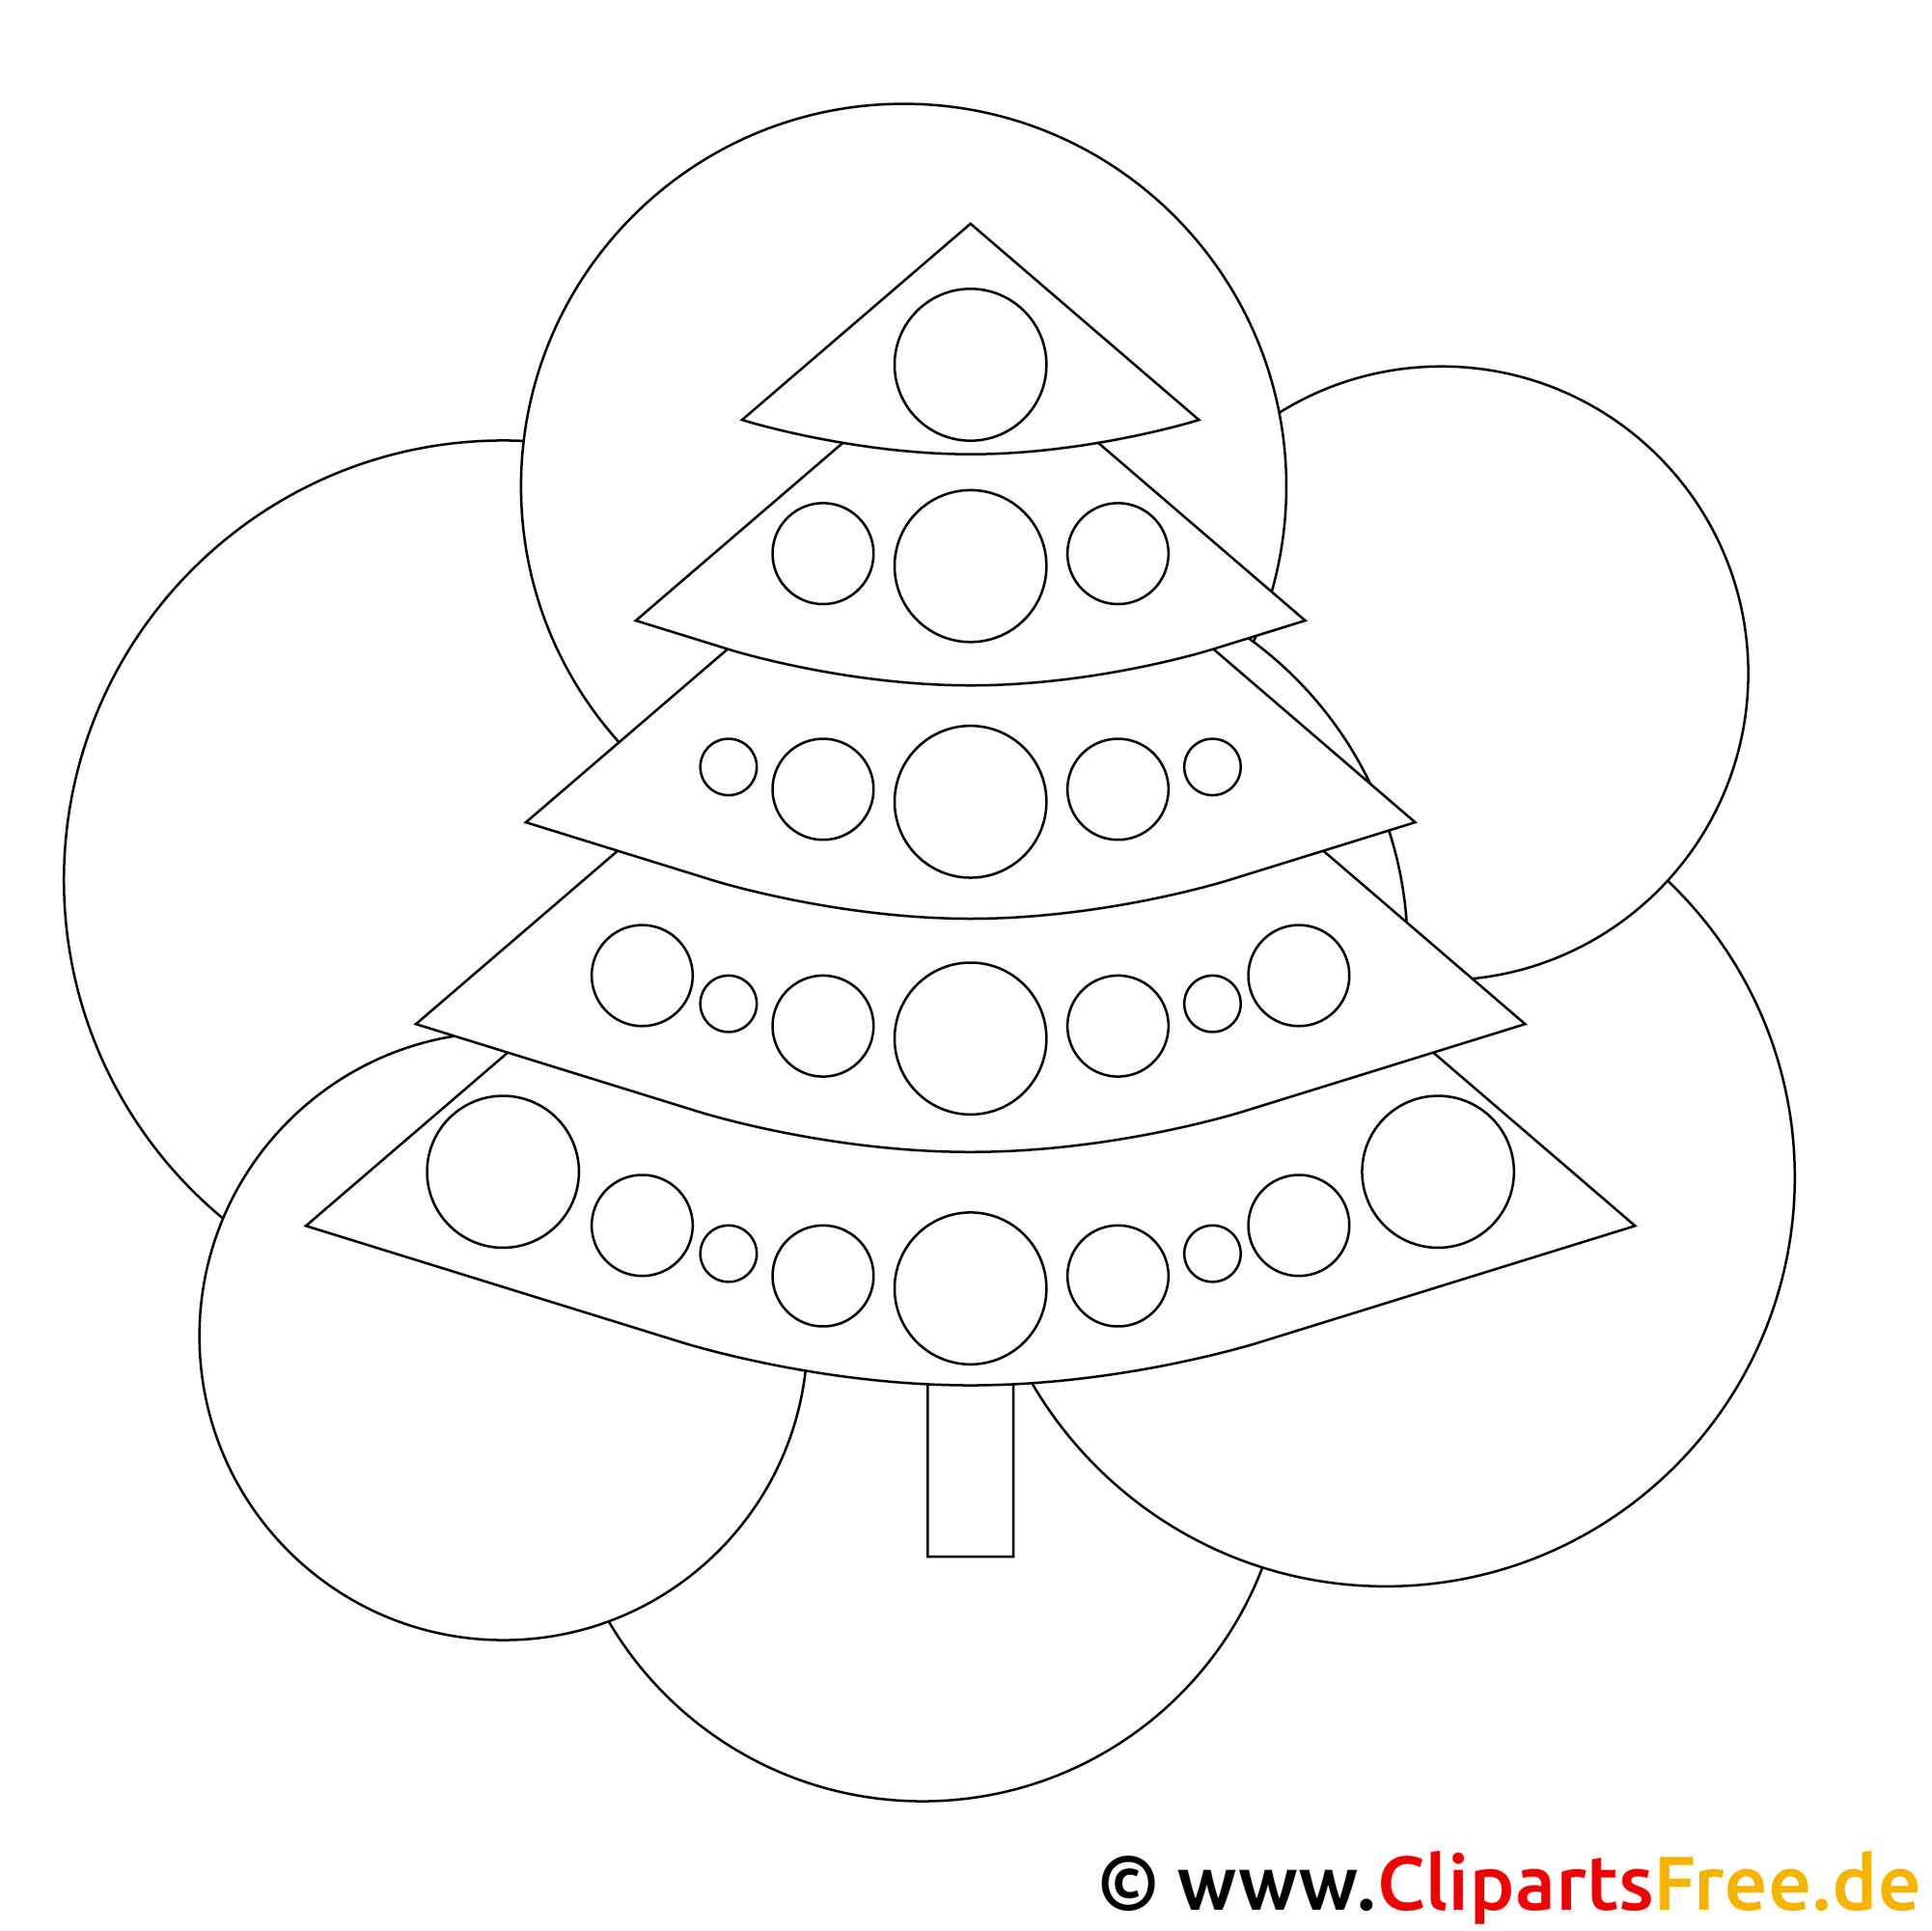 kostenloses ausmalbild zu weihnachten tannenbaum